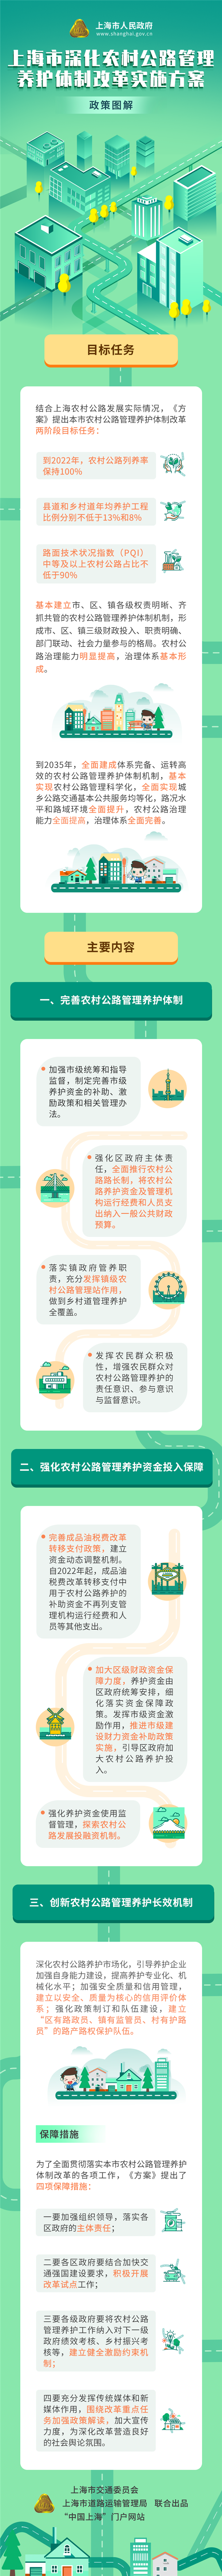 《上海市深化农村公路管理养护体制改革实施方案》政策图解.png